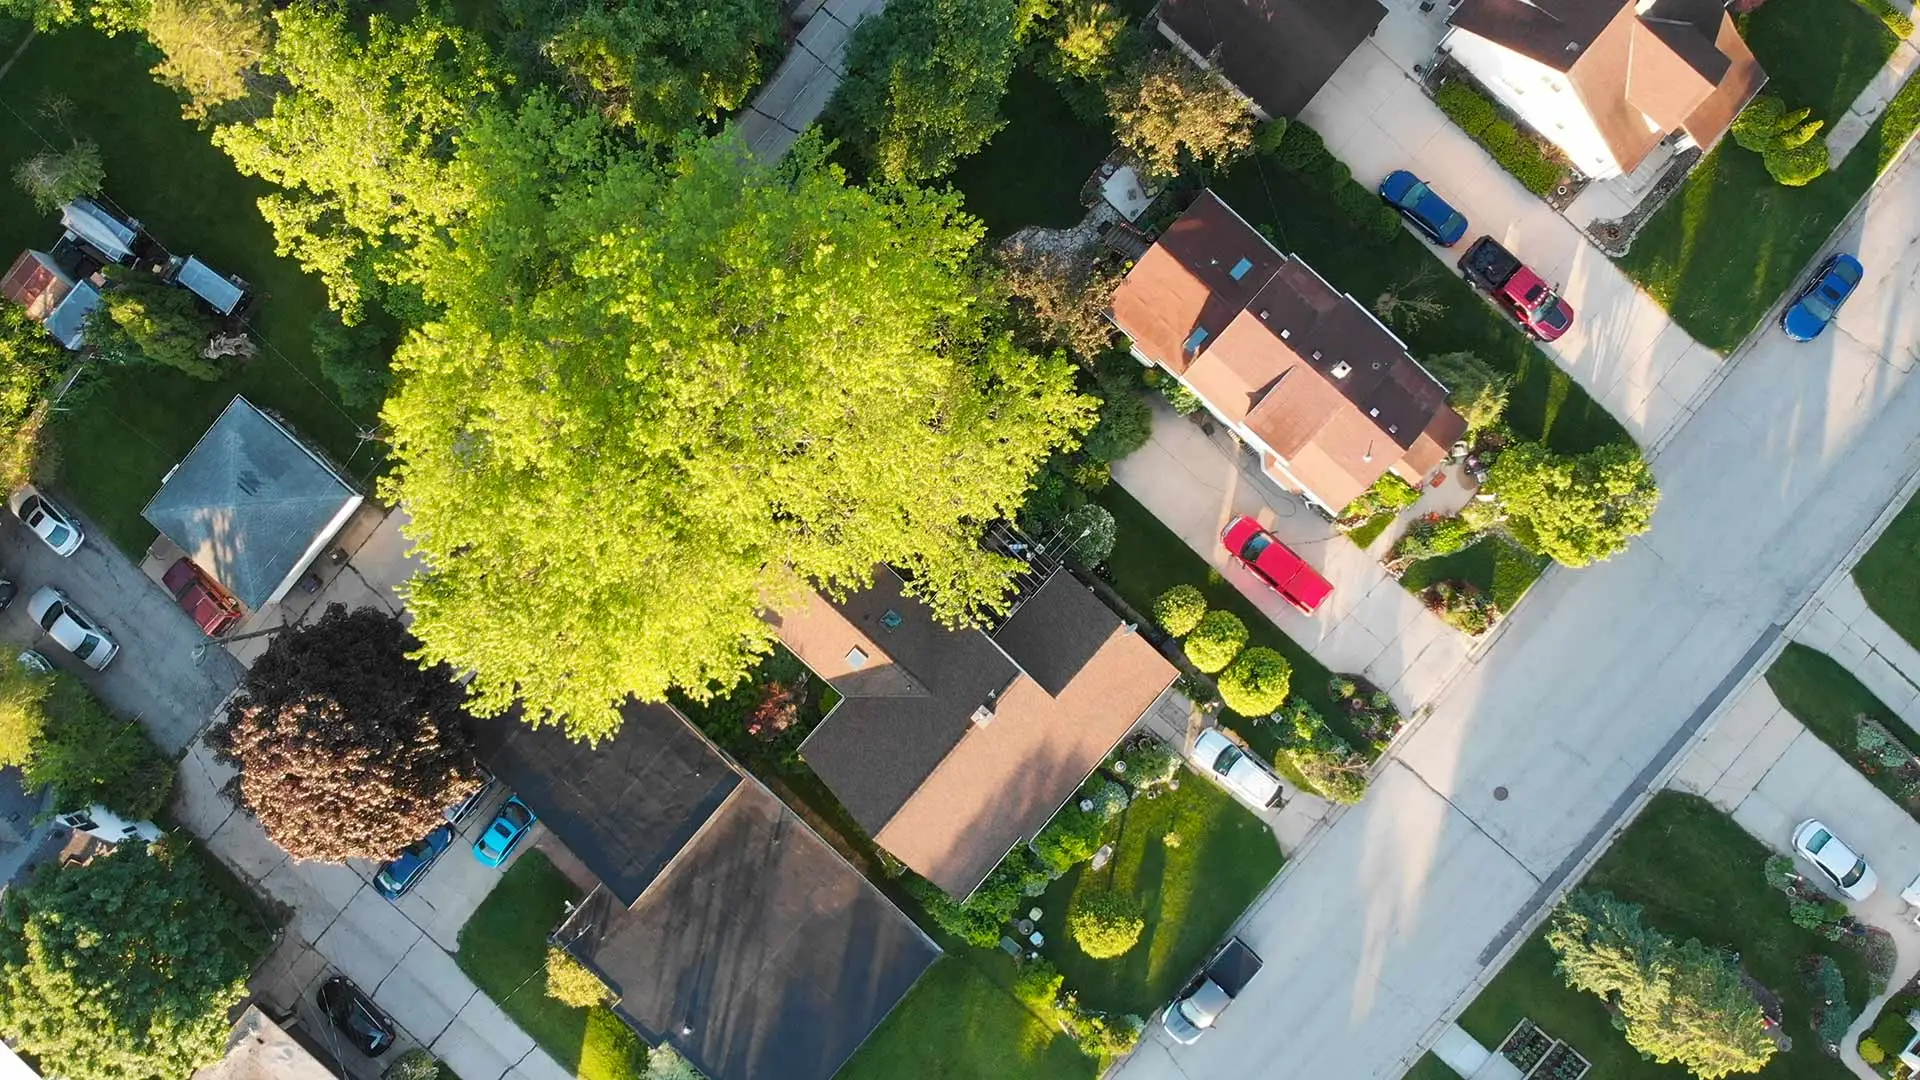 Aerial view of homes in a neighborhood in Lansing, MI.